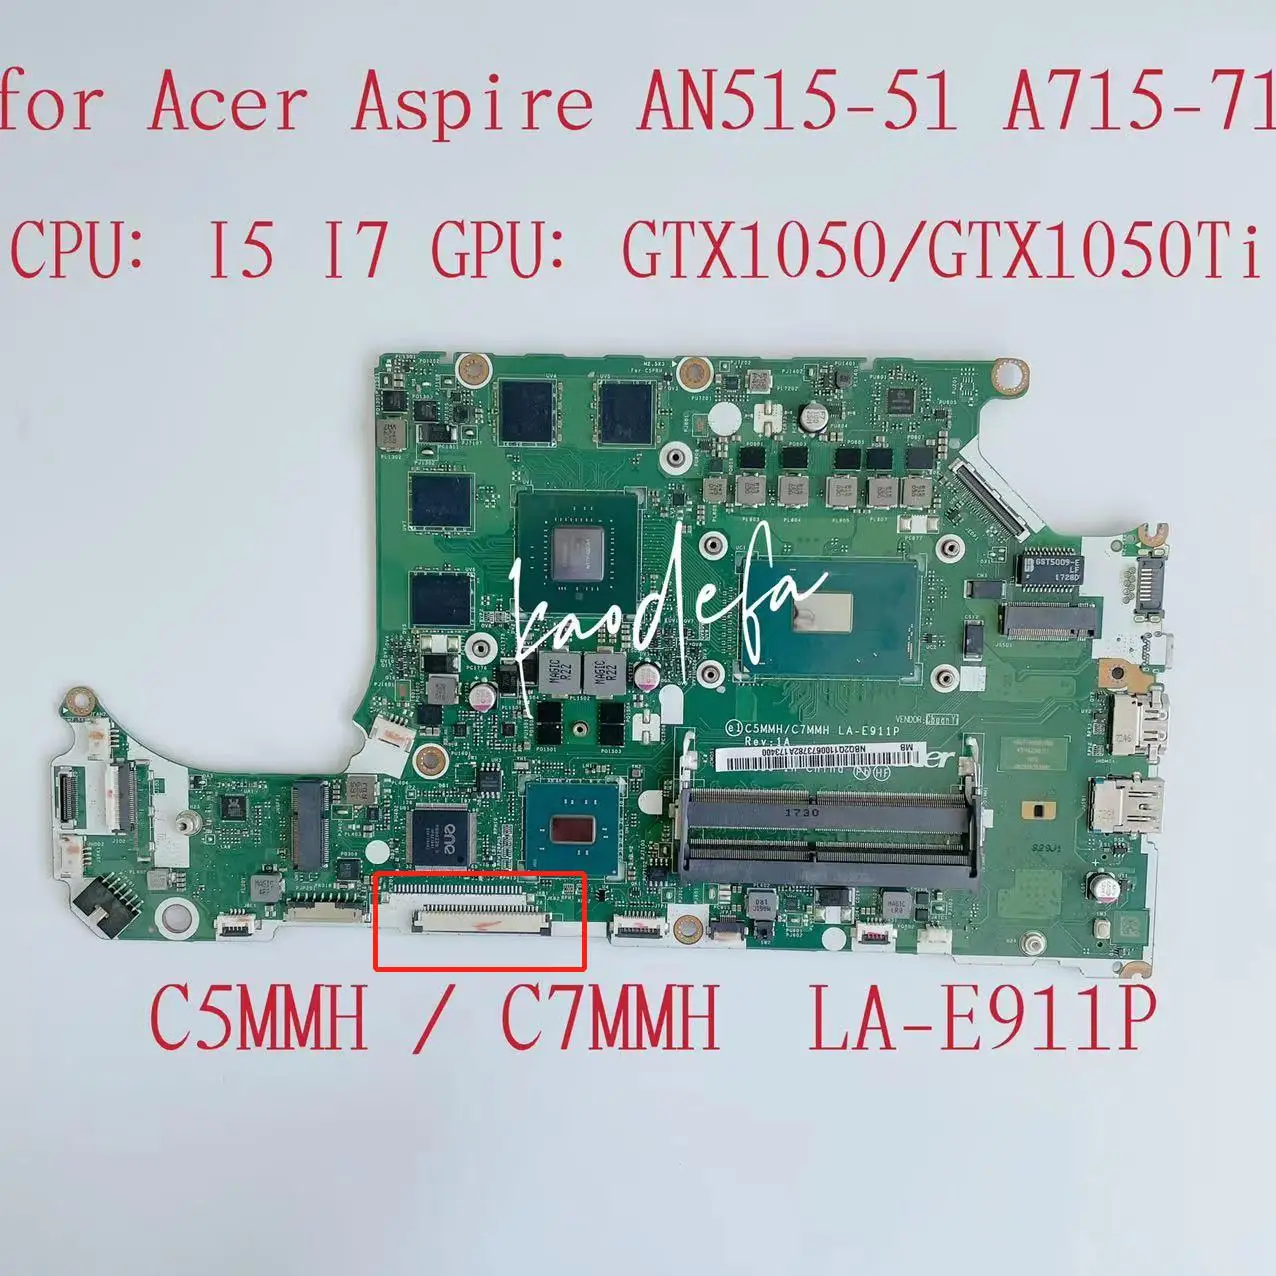 Acer Aspire AN515-51 Nešiojamojo kompiuterio pagrindinė Plokštė CPU:I5U I7U GPU:GTX1050/GTX1050TI 4GB DDR4 C5MMH/C7MMH LA-E911P Mainboard Bandymo gerai